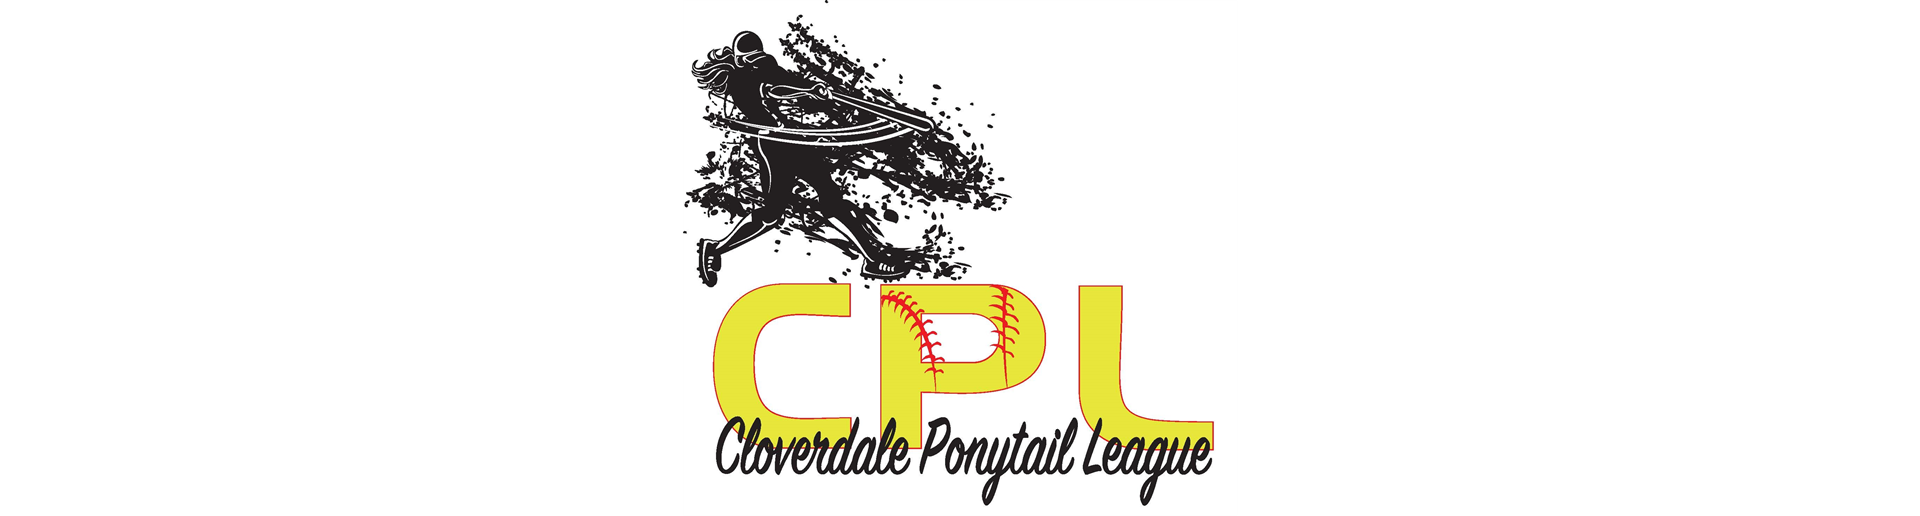 Cloverdale Ponytail League Facebook Page